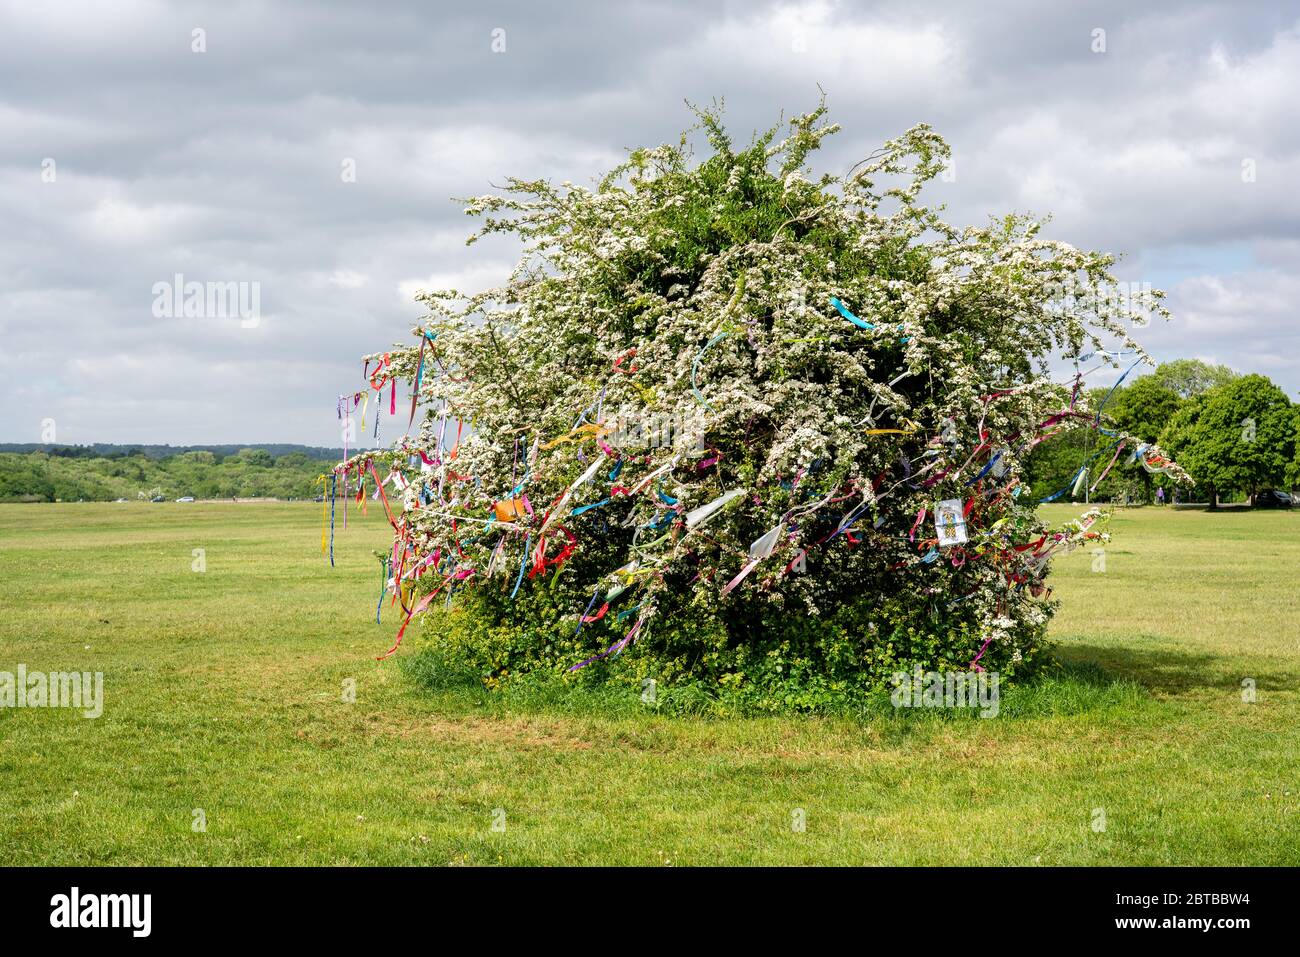 Wish Tree hawthorn couvert en mai, fleurir des rubans colorés et des voeux sur les Downs à Bristol pendant la pandémie de Corinavirus de 2020 Banque D'Images